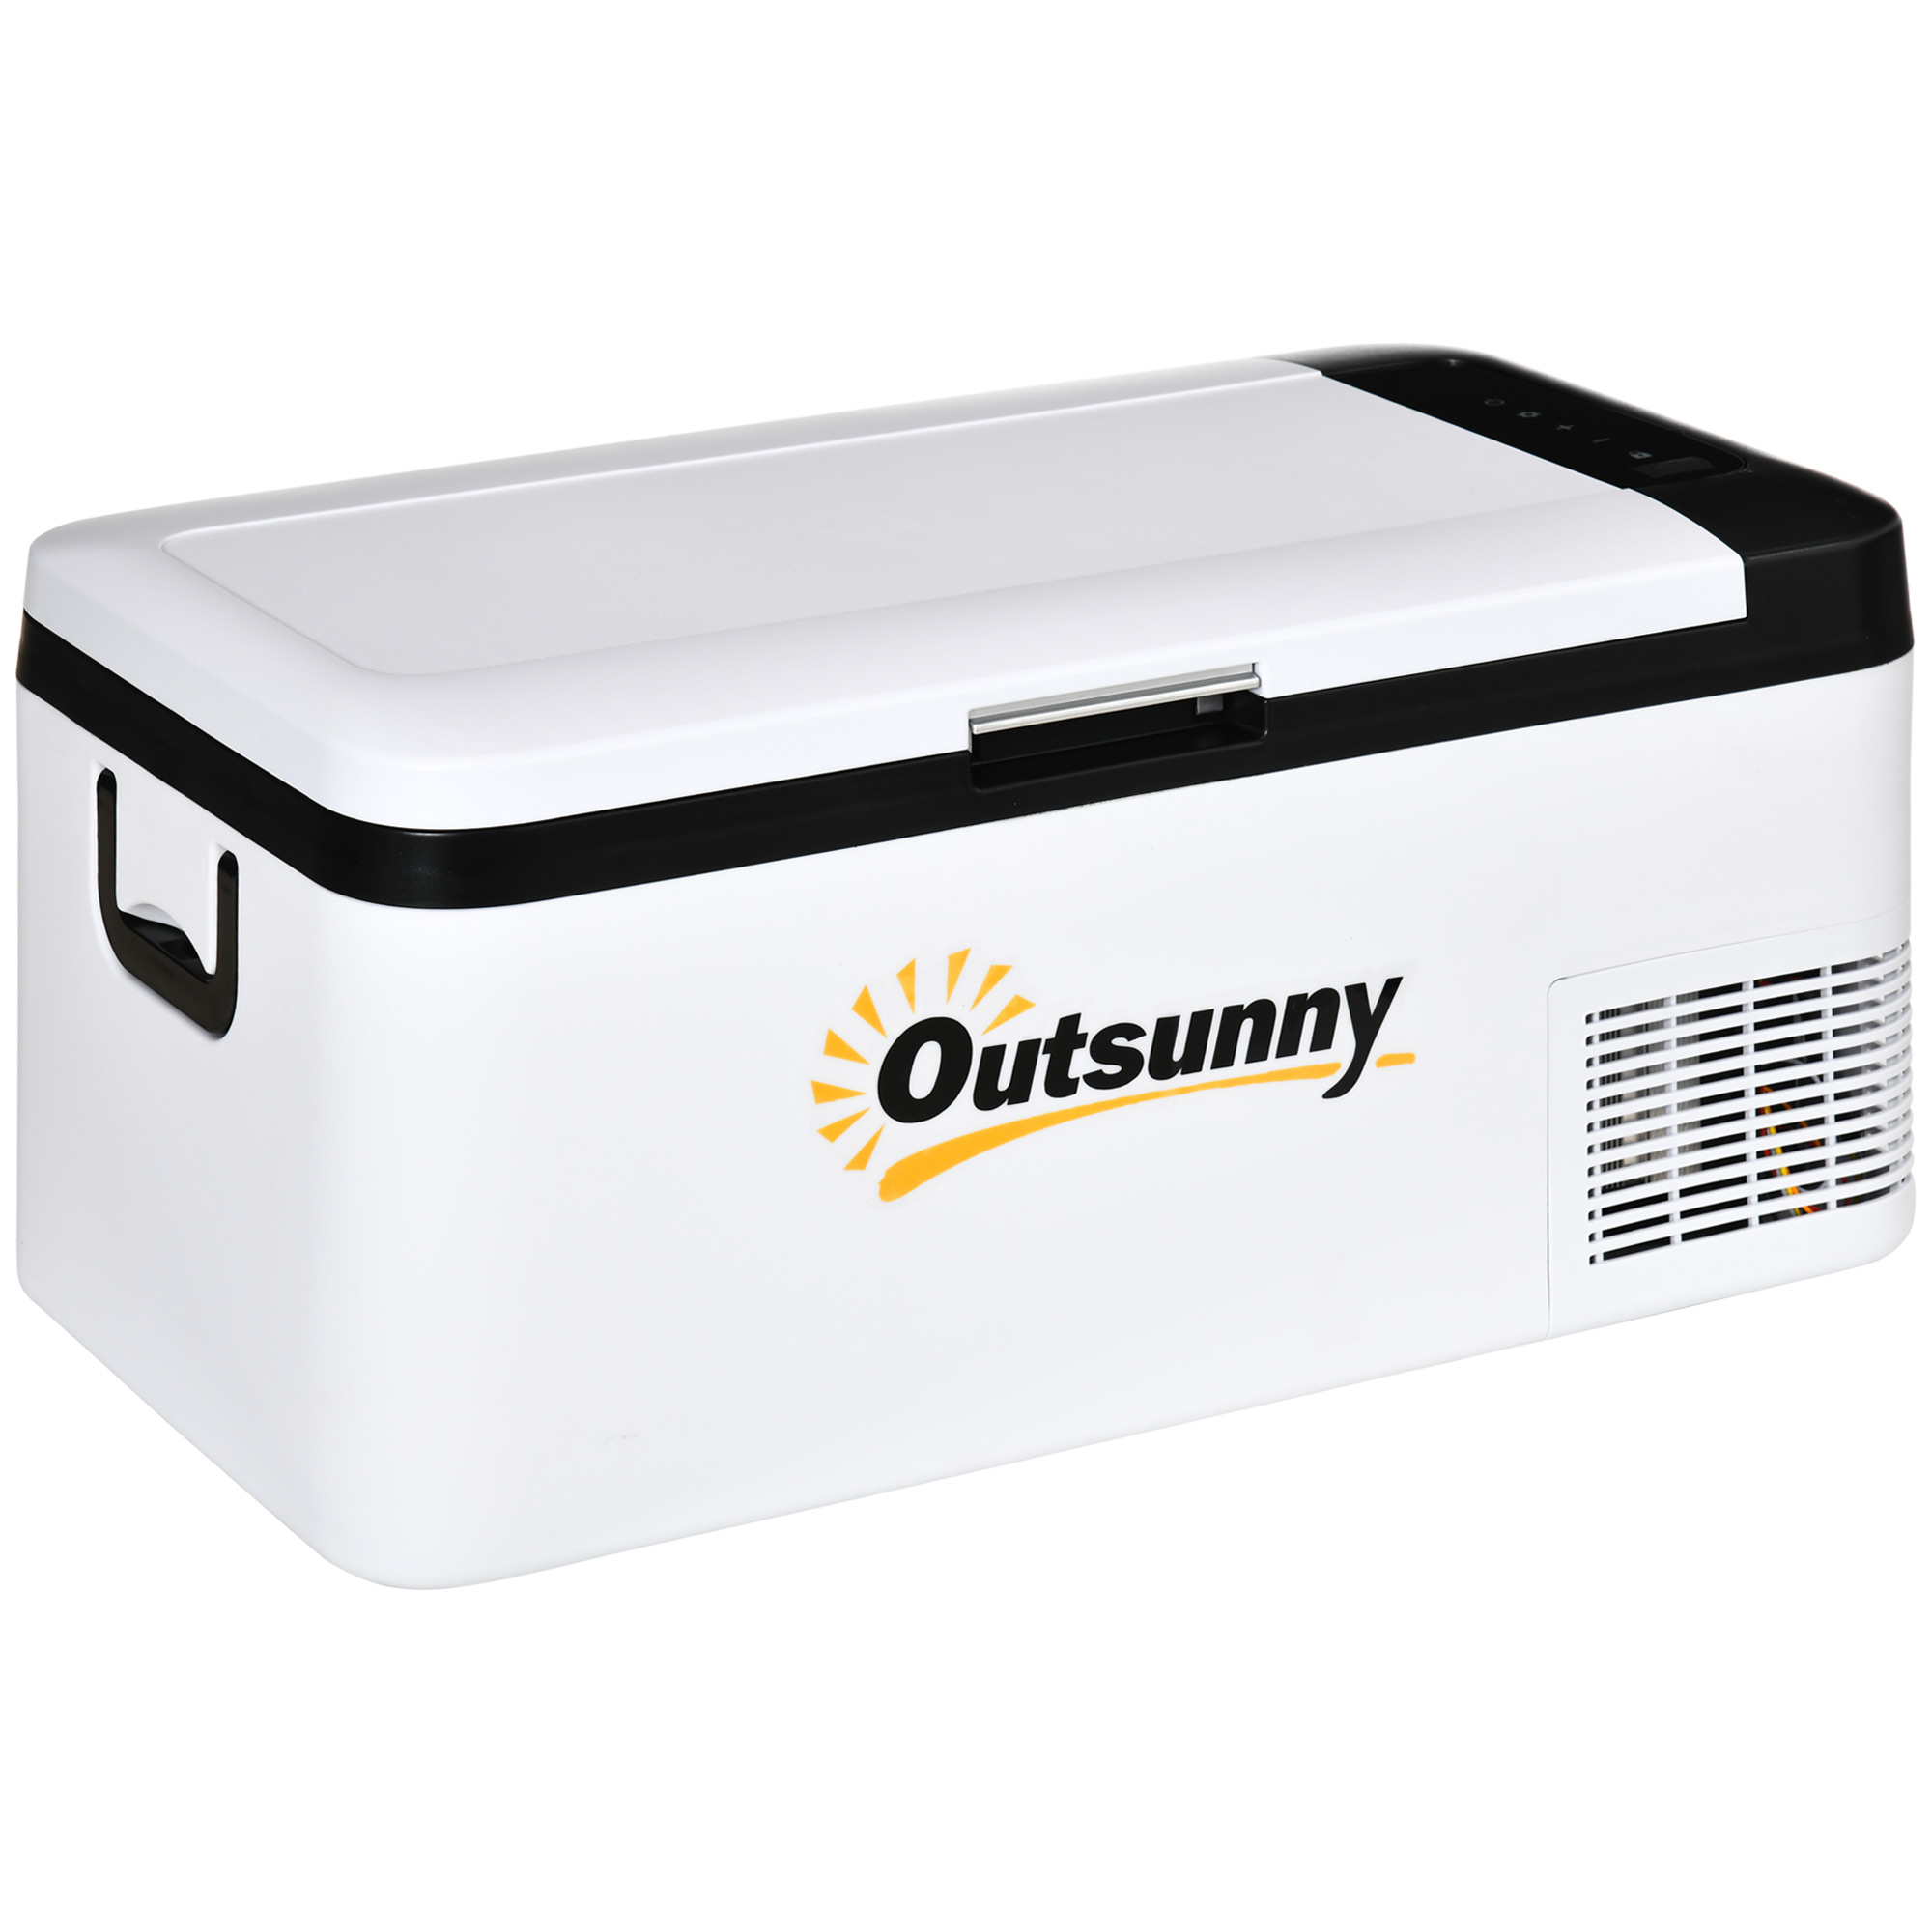 Outsunny 12v Car Refrigerator W/ Led Light & Foldable Handles, 18l Portable Compressor Cooler, Fridge Freezer For Campervan Rv Boat Travel